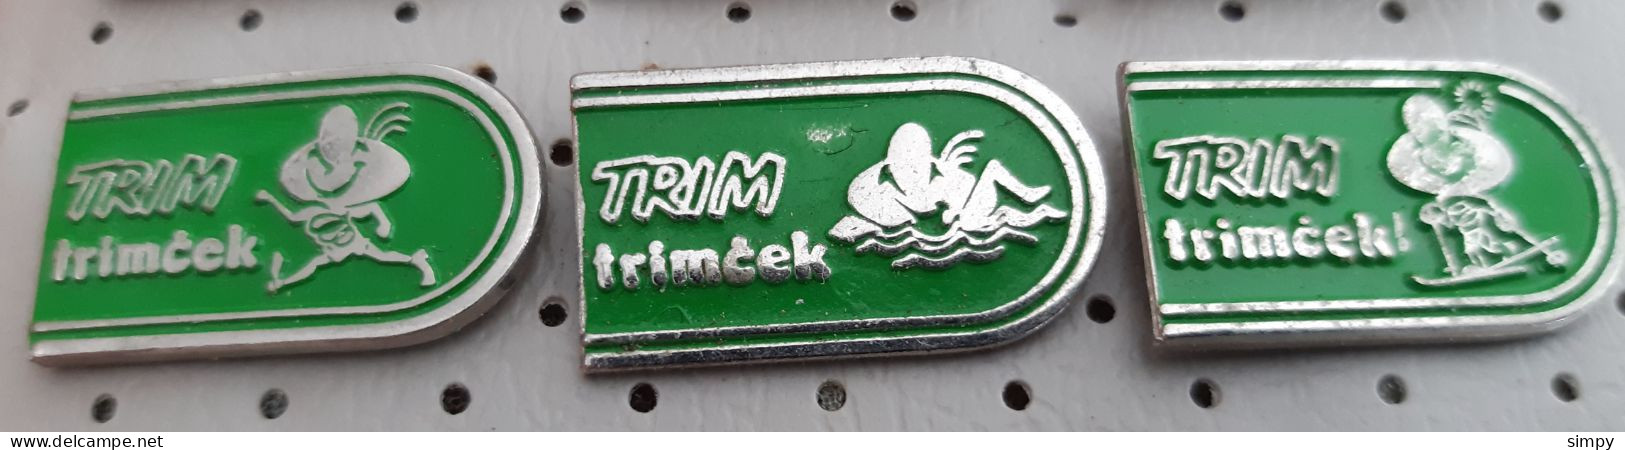 Trimcek Running Swimming Skiing Slovenia Ex Yugoslavia Pins - Swimming